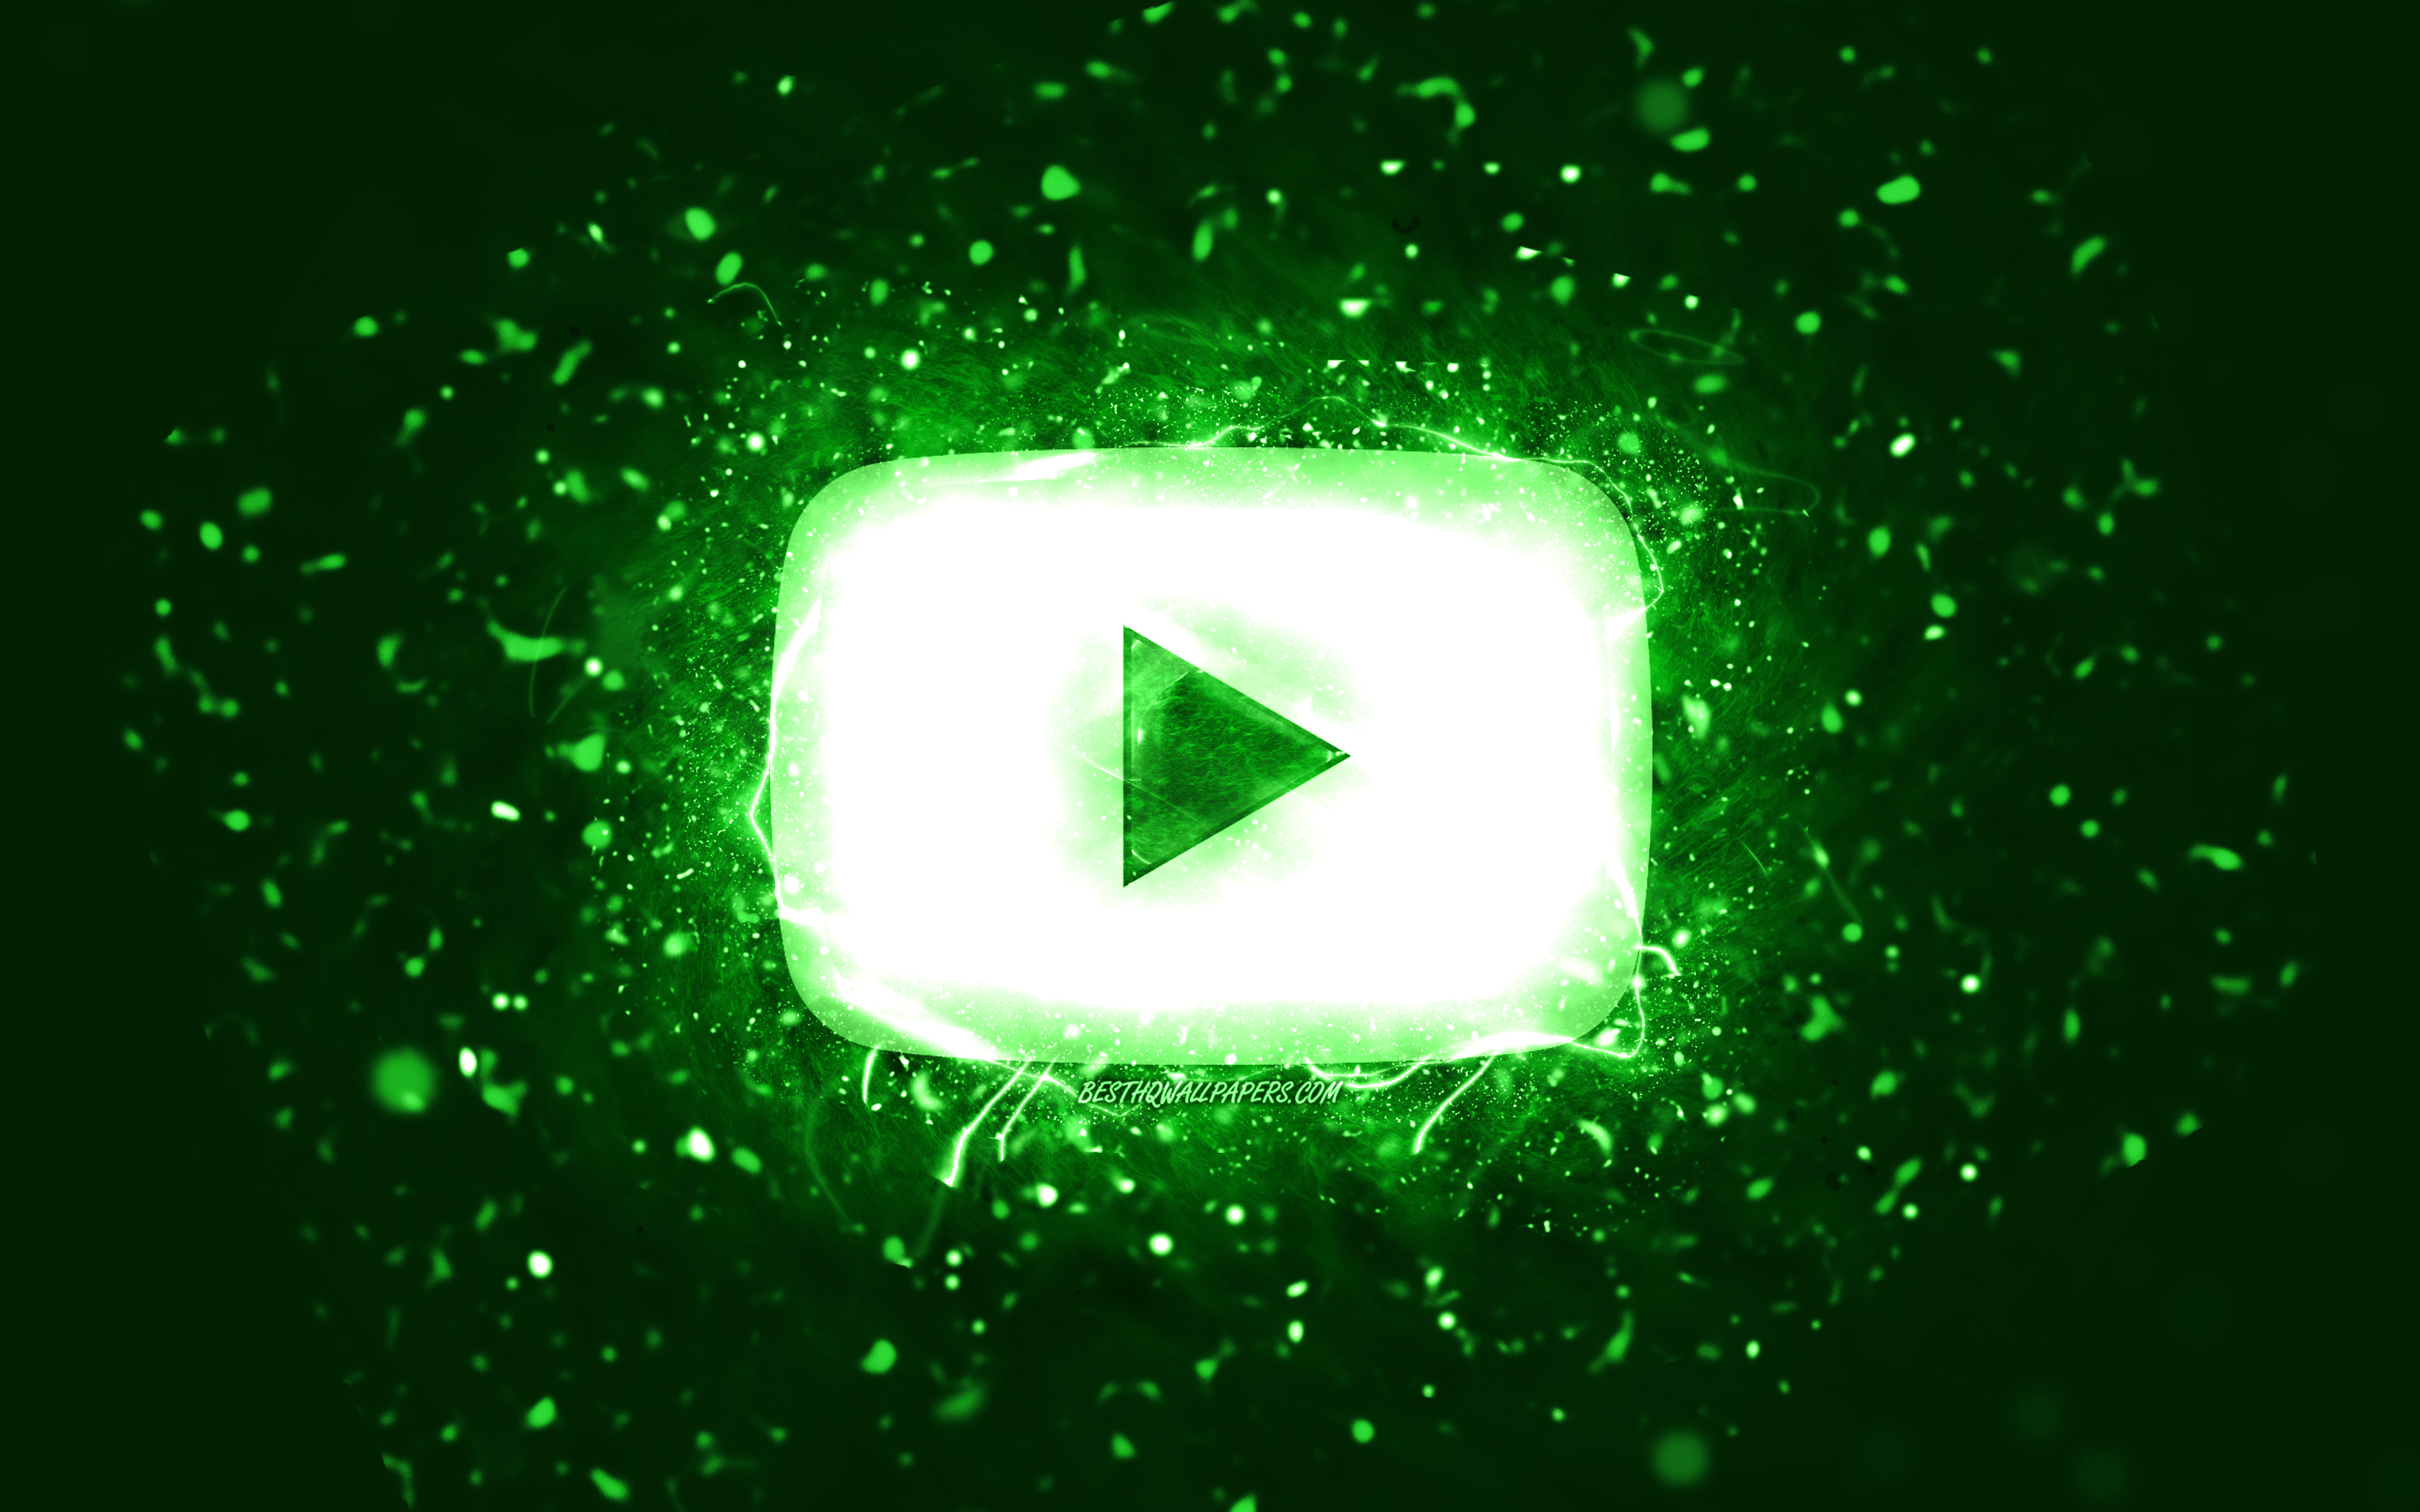 Với biểu tượng YouTube được thiết kế màu xanh lá và ánh sáng neon màu xanh lấp lánh, những bức ảnh 4k cùng chủ đề Green Neon Lights thật sự đáng để bạn thưởng thức. Hãy tải ngay những hình nền sáng tạo này về để trang trí cho thiết bị của mình nhé!